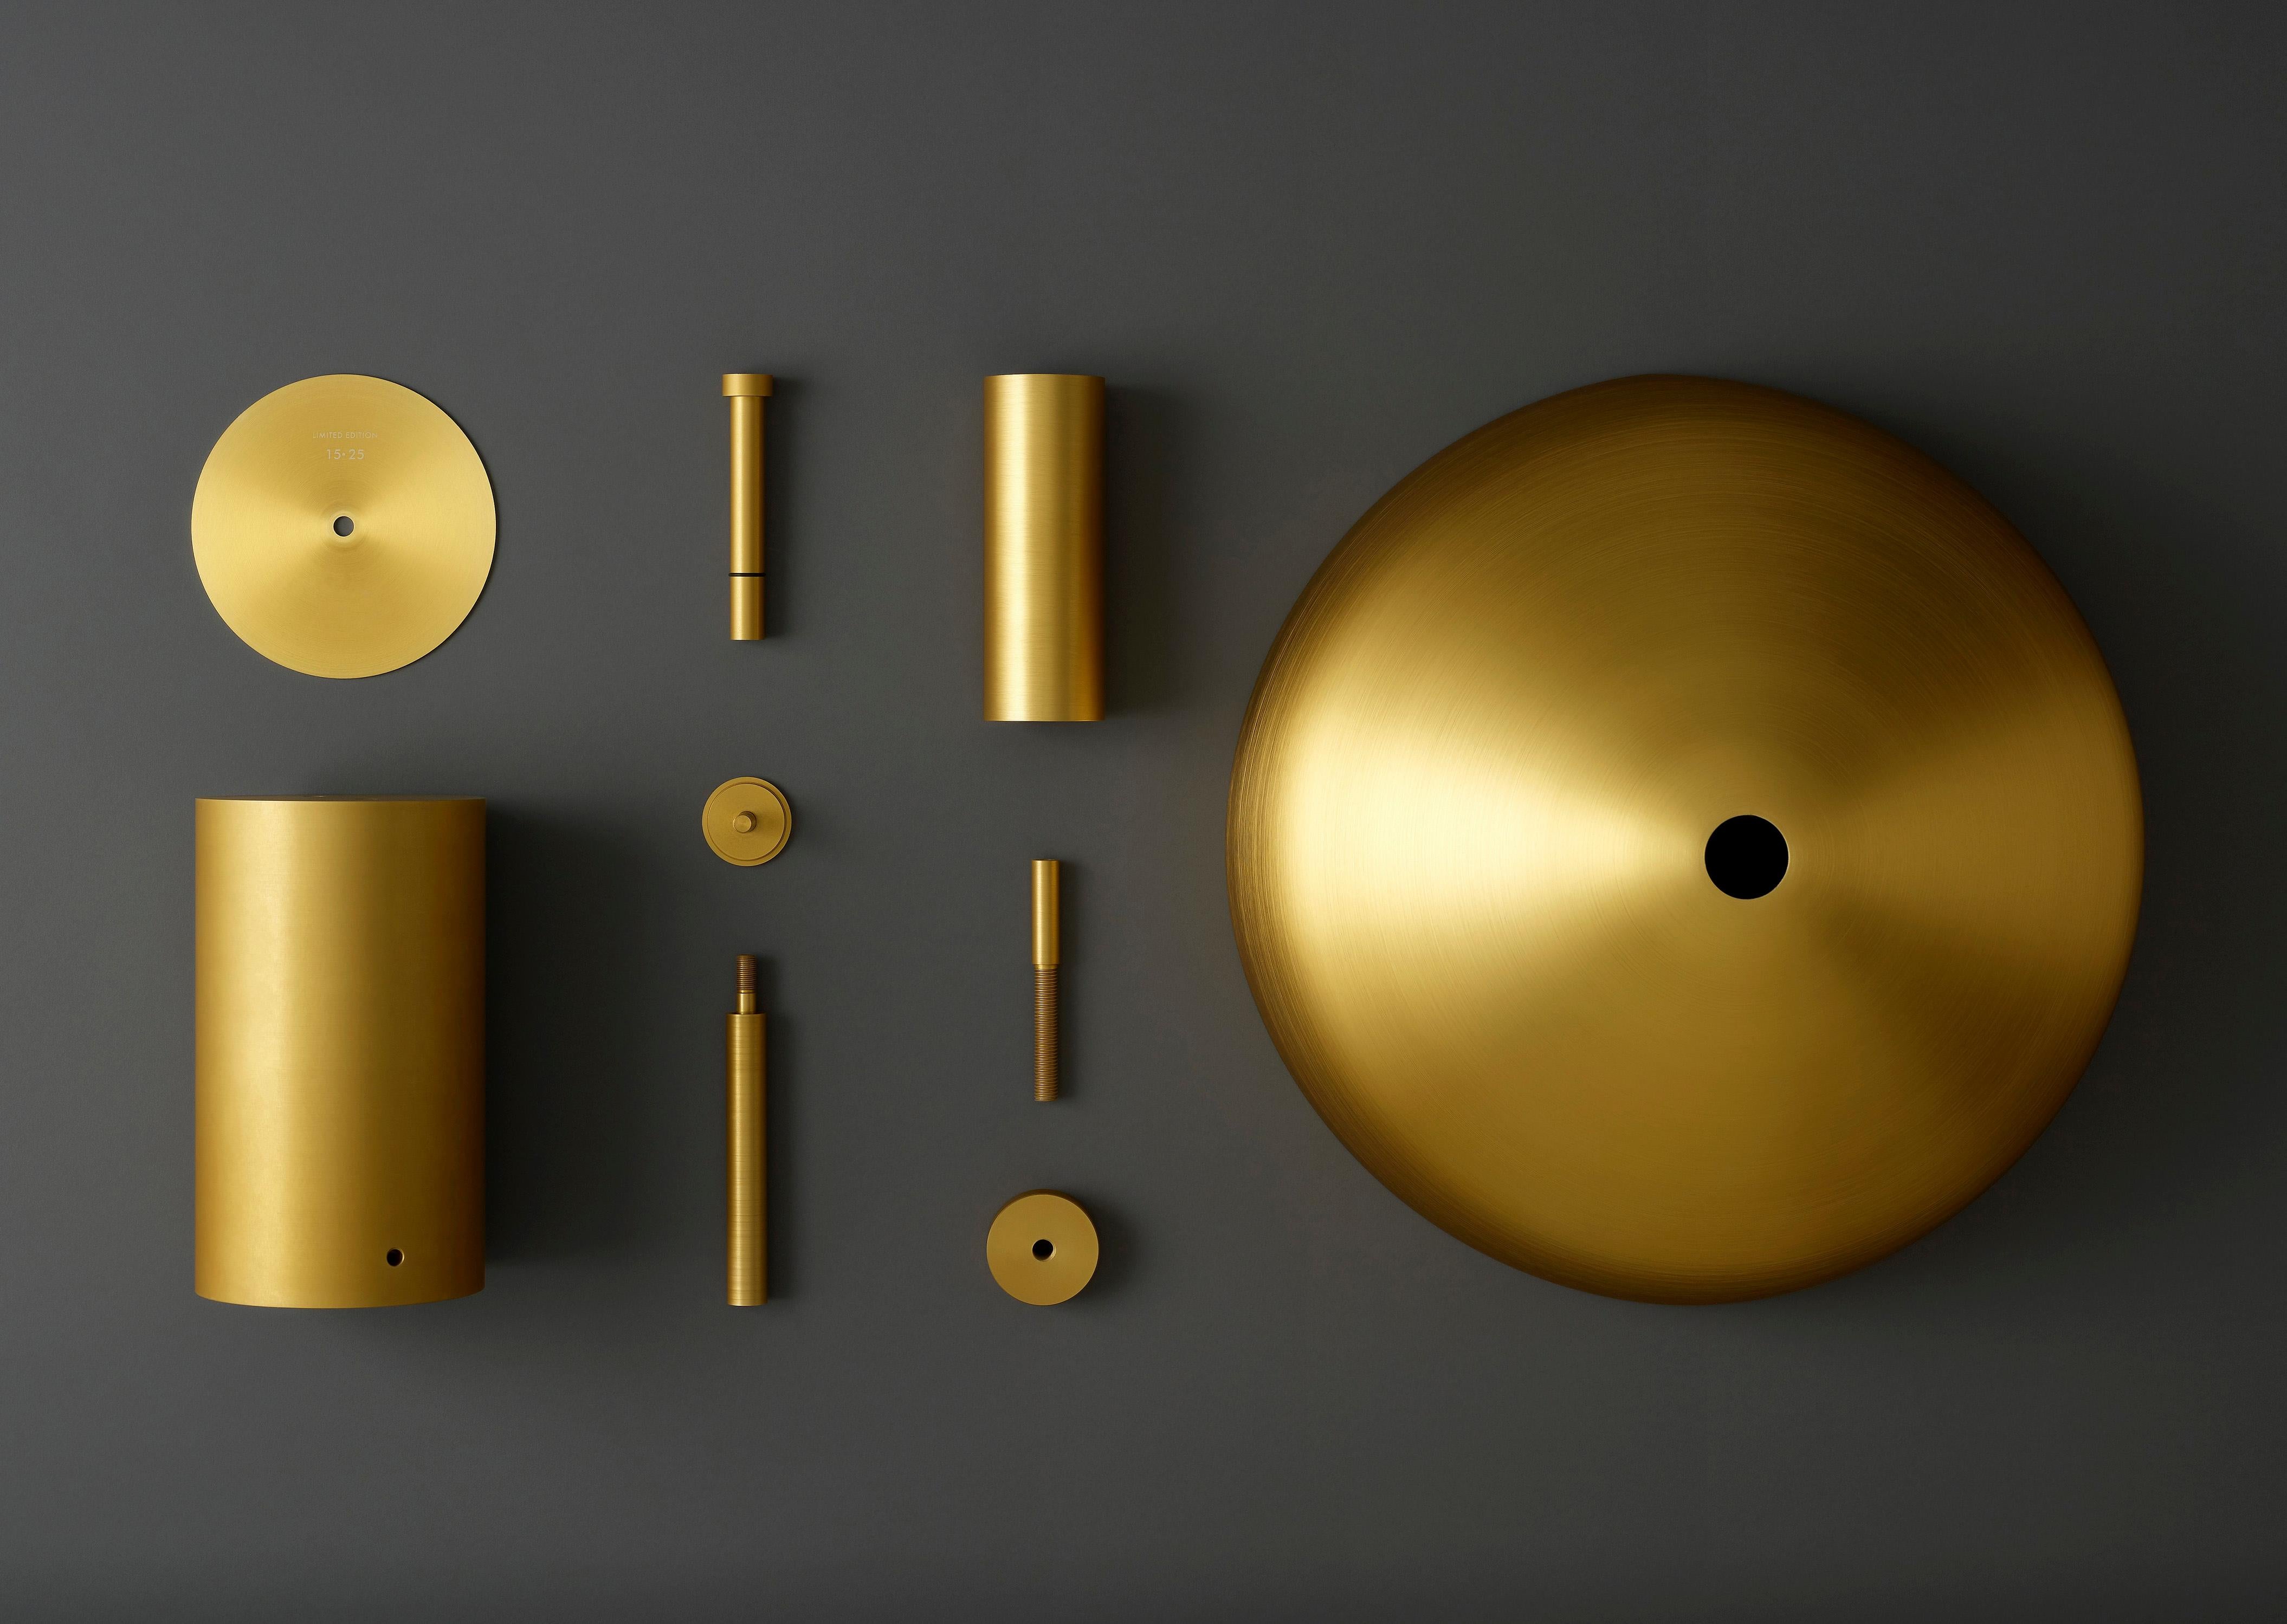 La lampe de bureau Ora gold en édition limitée est le résultat d'un désir de pureté et d'honnêteté, tant dans les matériaux que dans la fabrication.

Entièrement usinée avec précision en aluminium et anodisée en or, la forme de l'Ora est